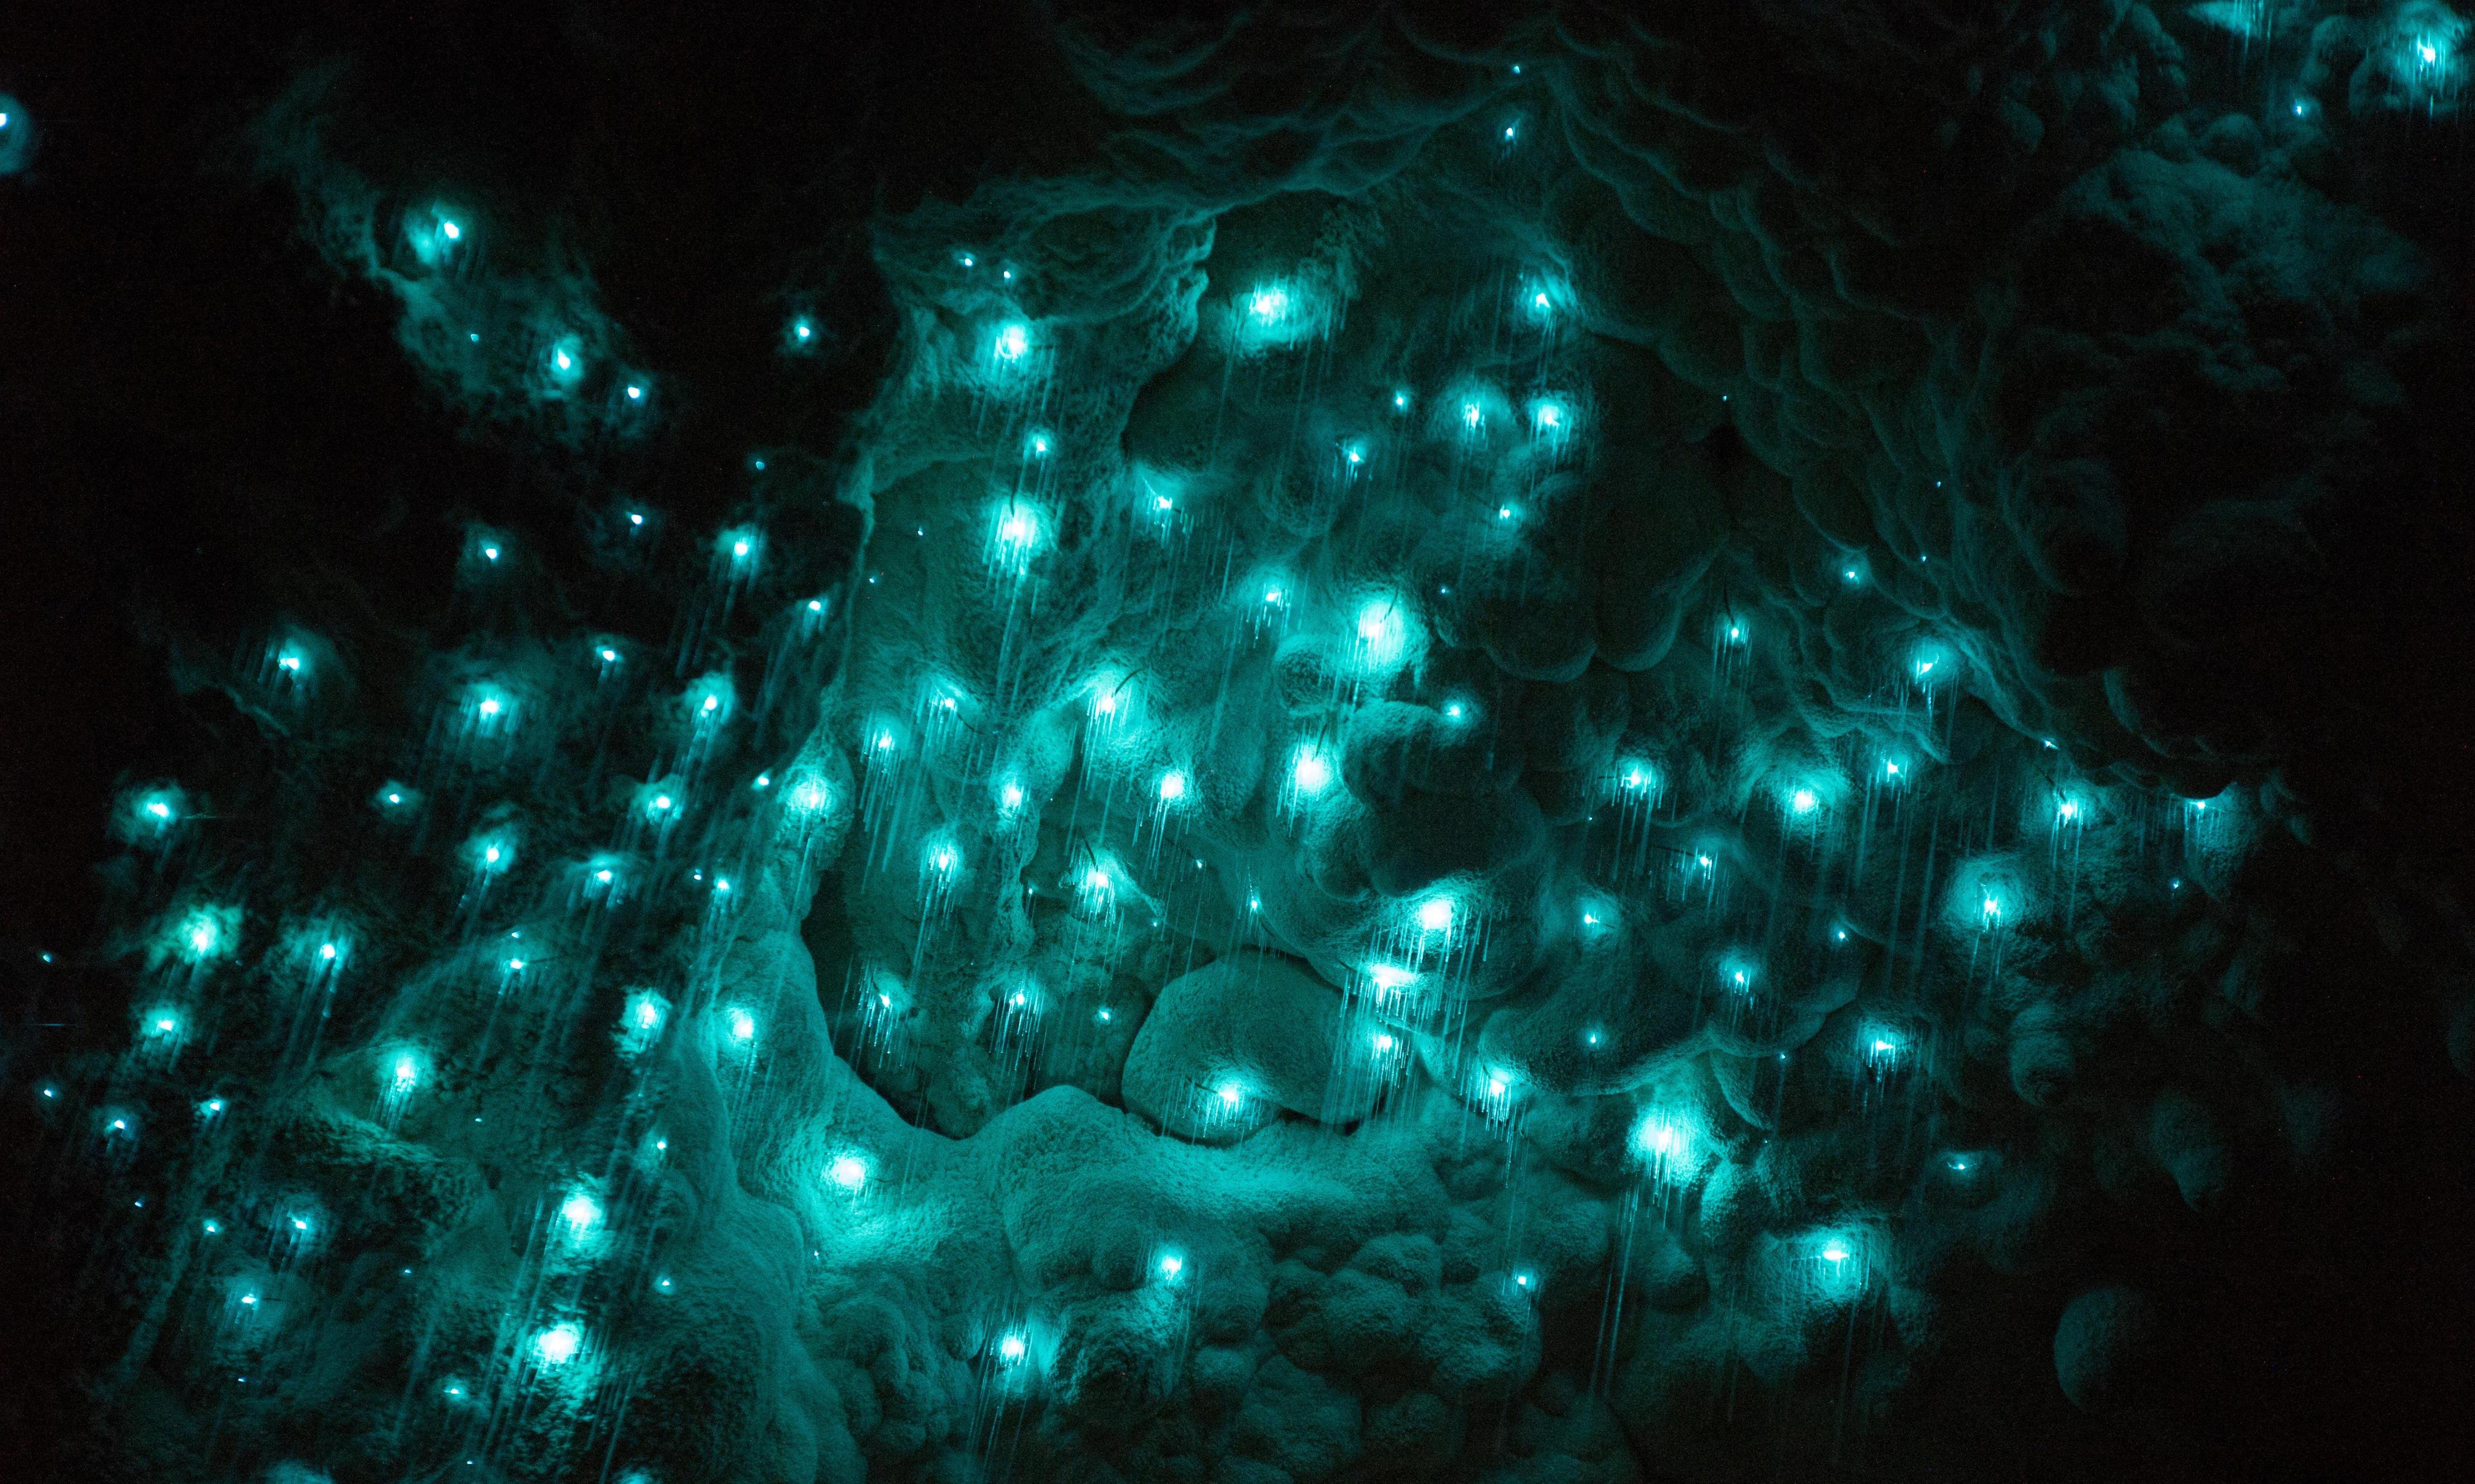 繁星点点的夜空：萤火虫在新西兰的怀托摩洞穴中巡逻着细细的粘糊状细小水滴。